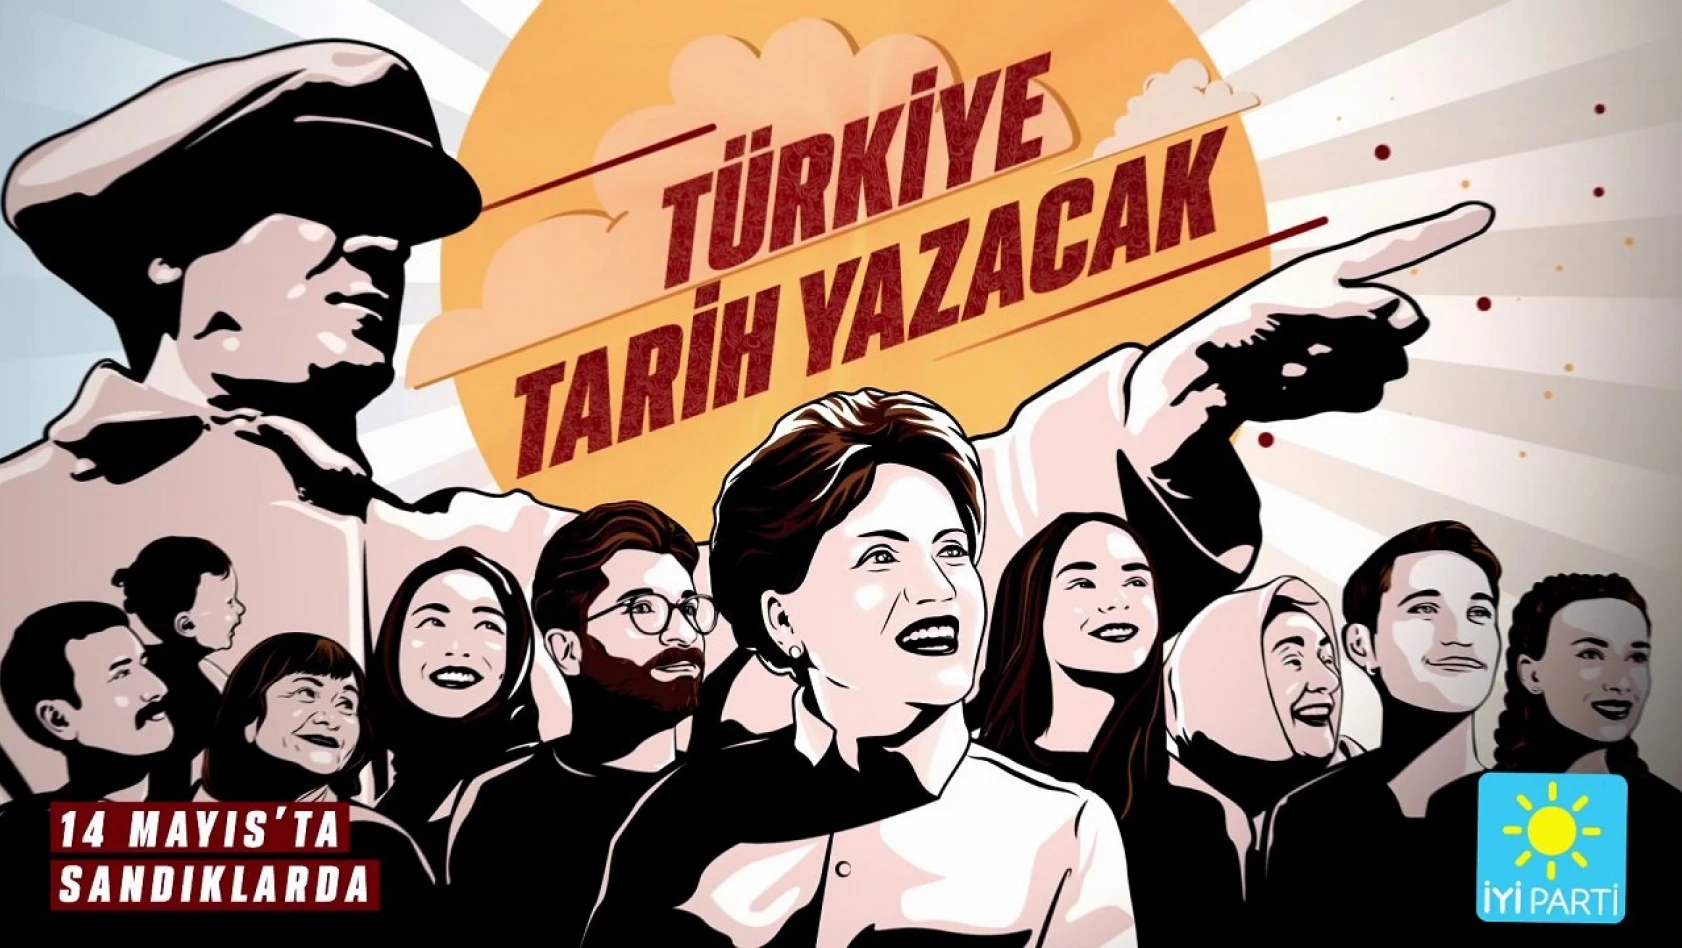 'Türkiye tarih yazacak!' sloganıyla başladı